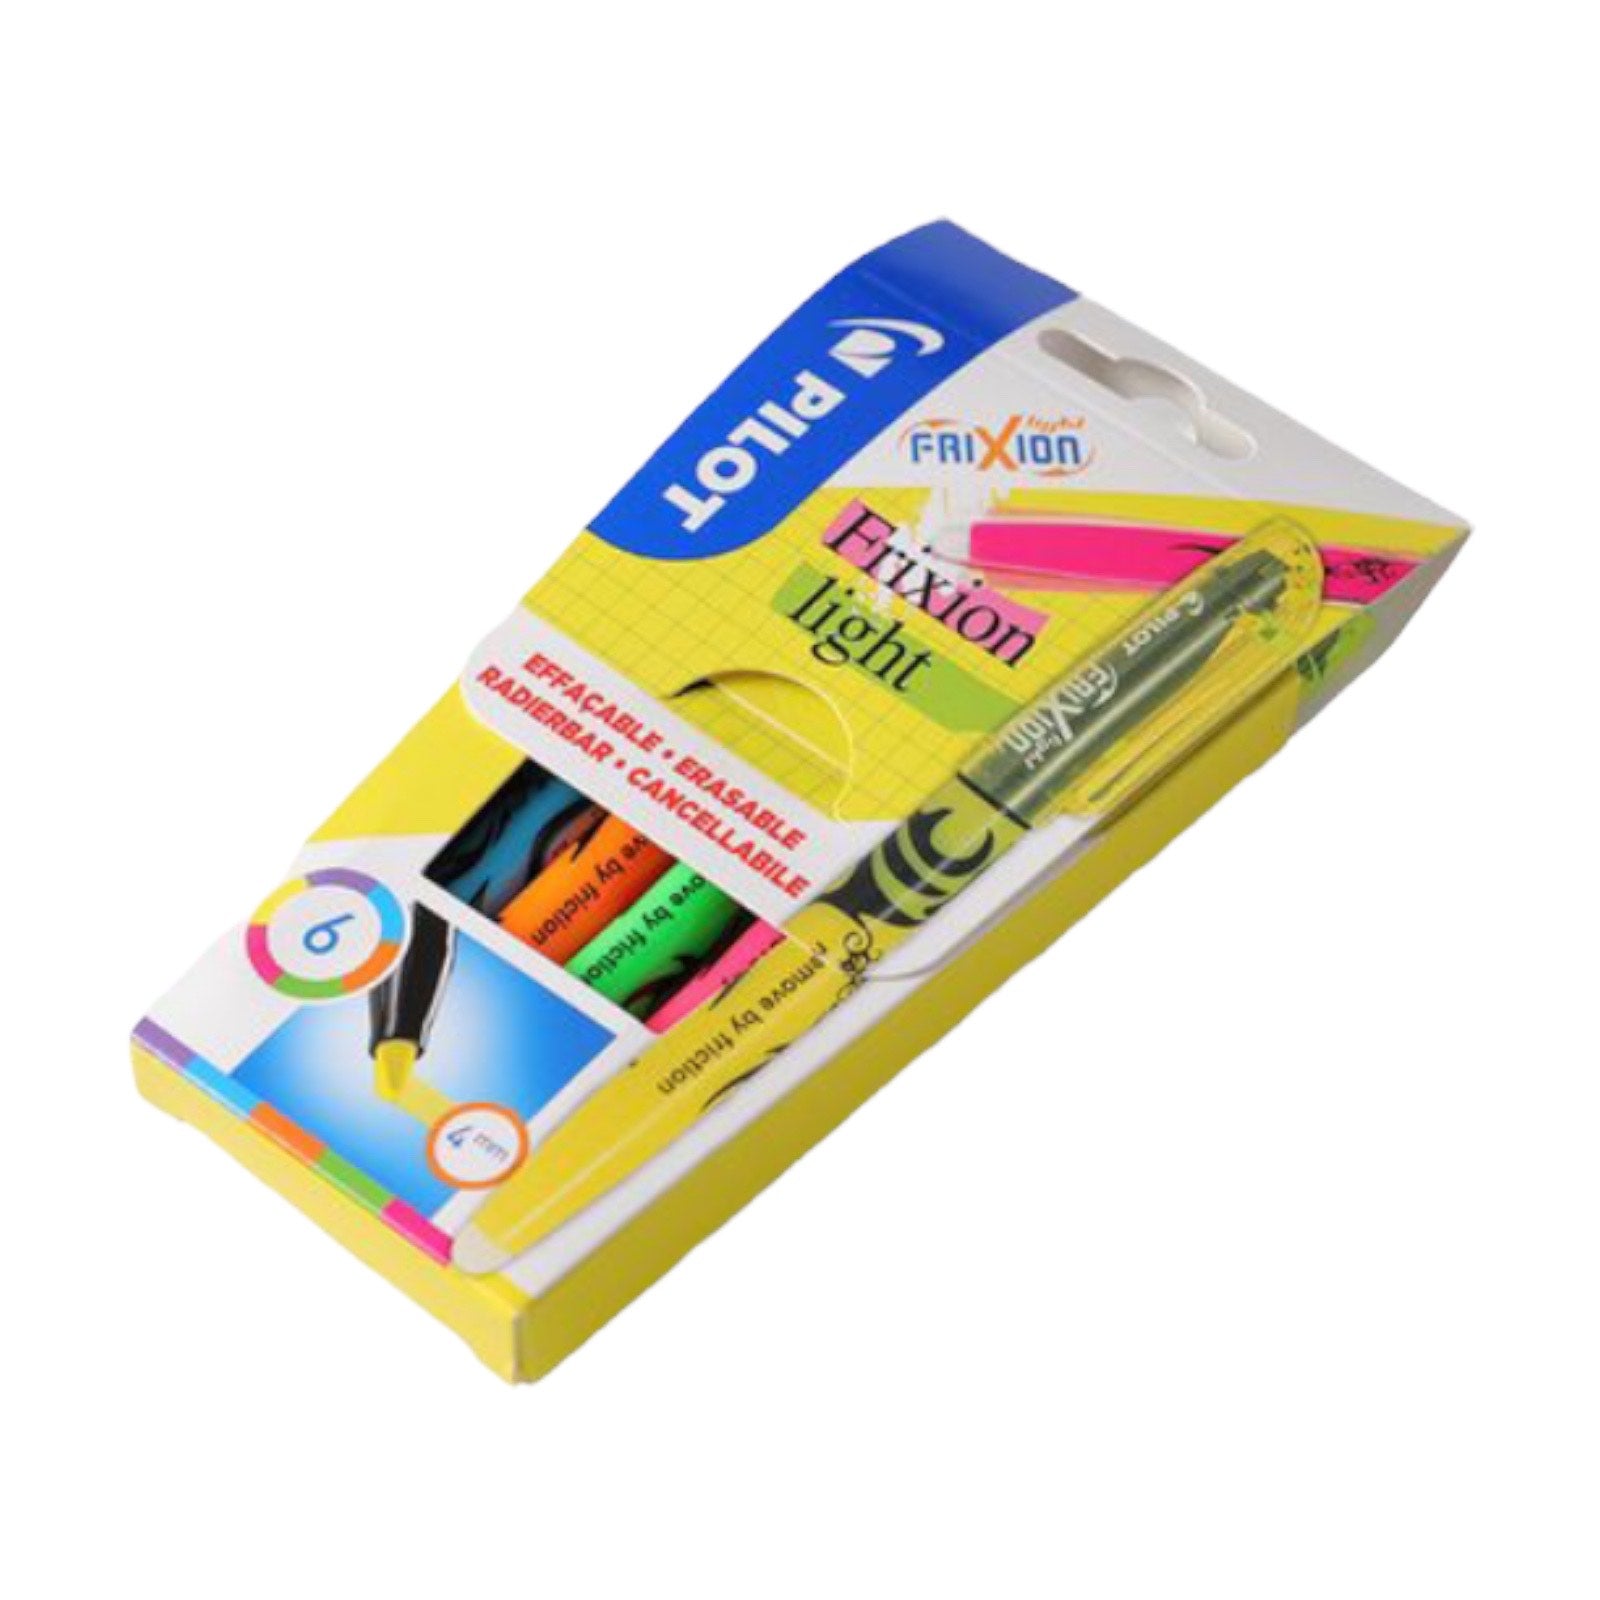 Pilot FriXion Eraser for FriXion Pens EFR-6  LBM UK Limited – LBM Art &  Stationery Store